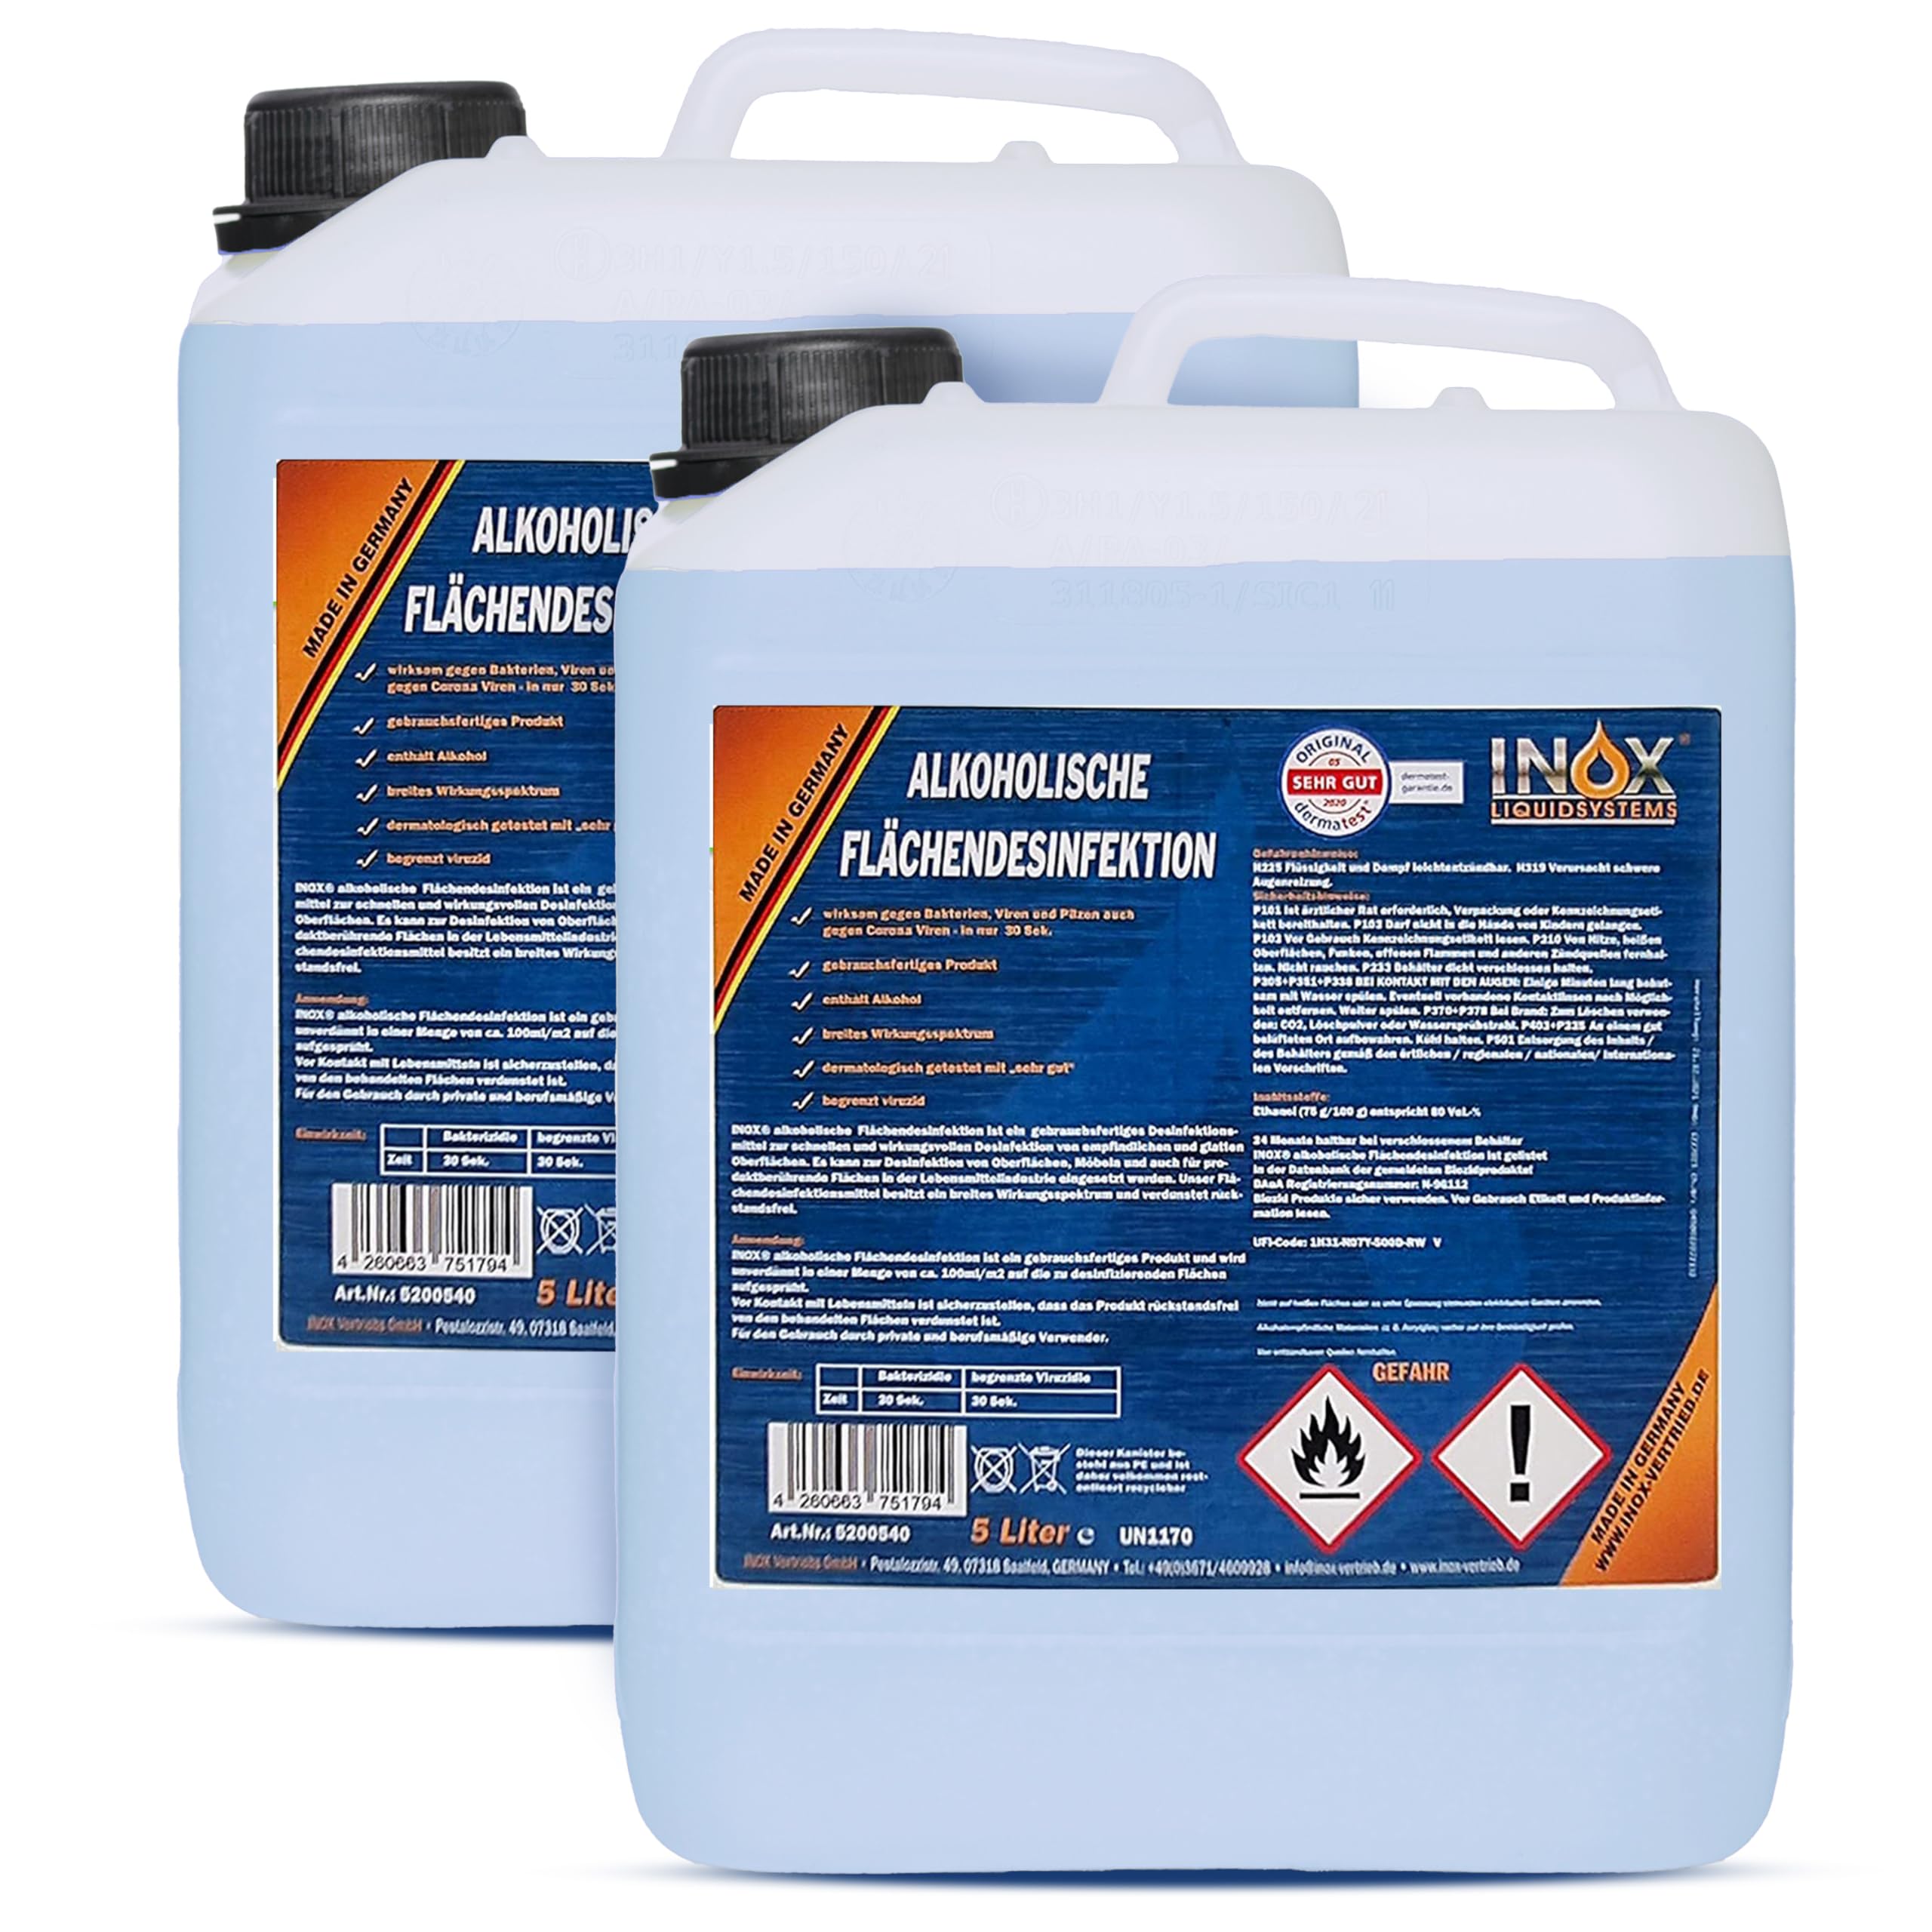 INOX® alkoholisches Flächendesinfektionsmittel 2 x 5L - Hochwirksame Flächendesinfektion mit Alkohol - Ideales Desinfektionsmittel für alle glatten Oberflächen